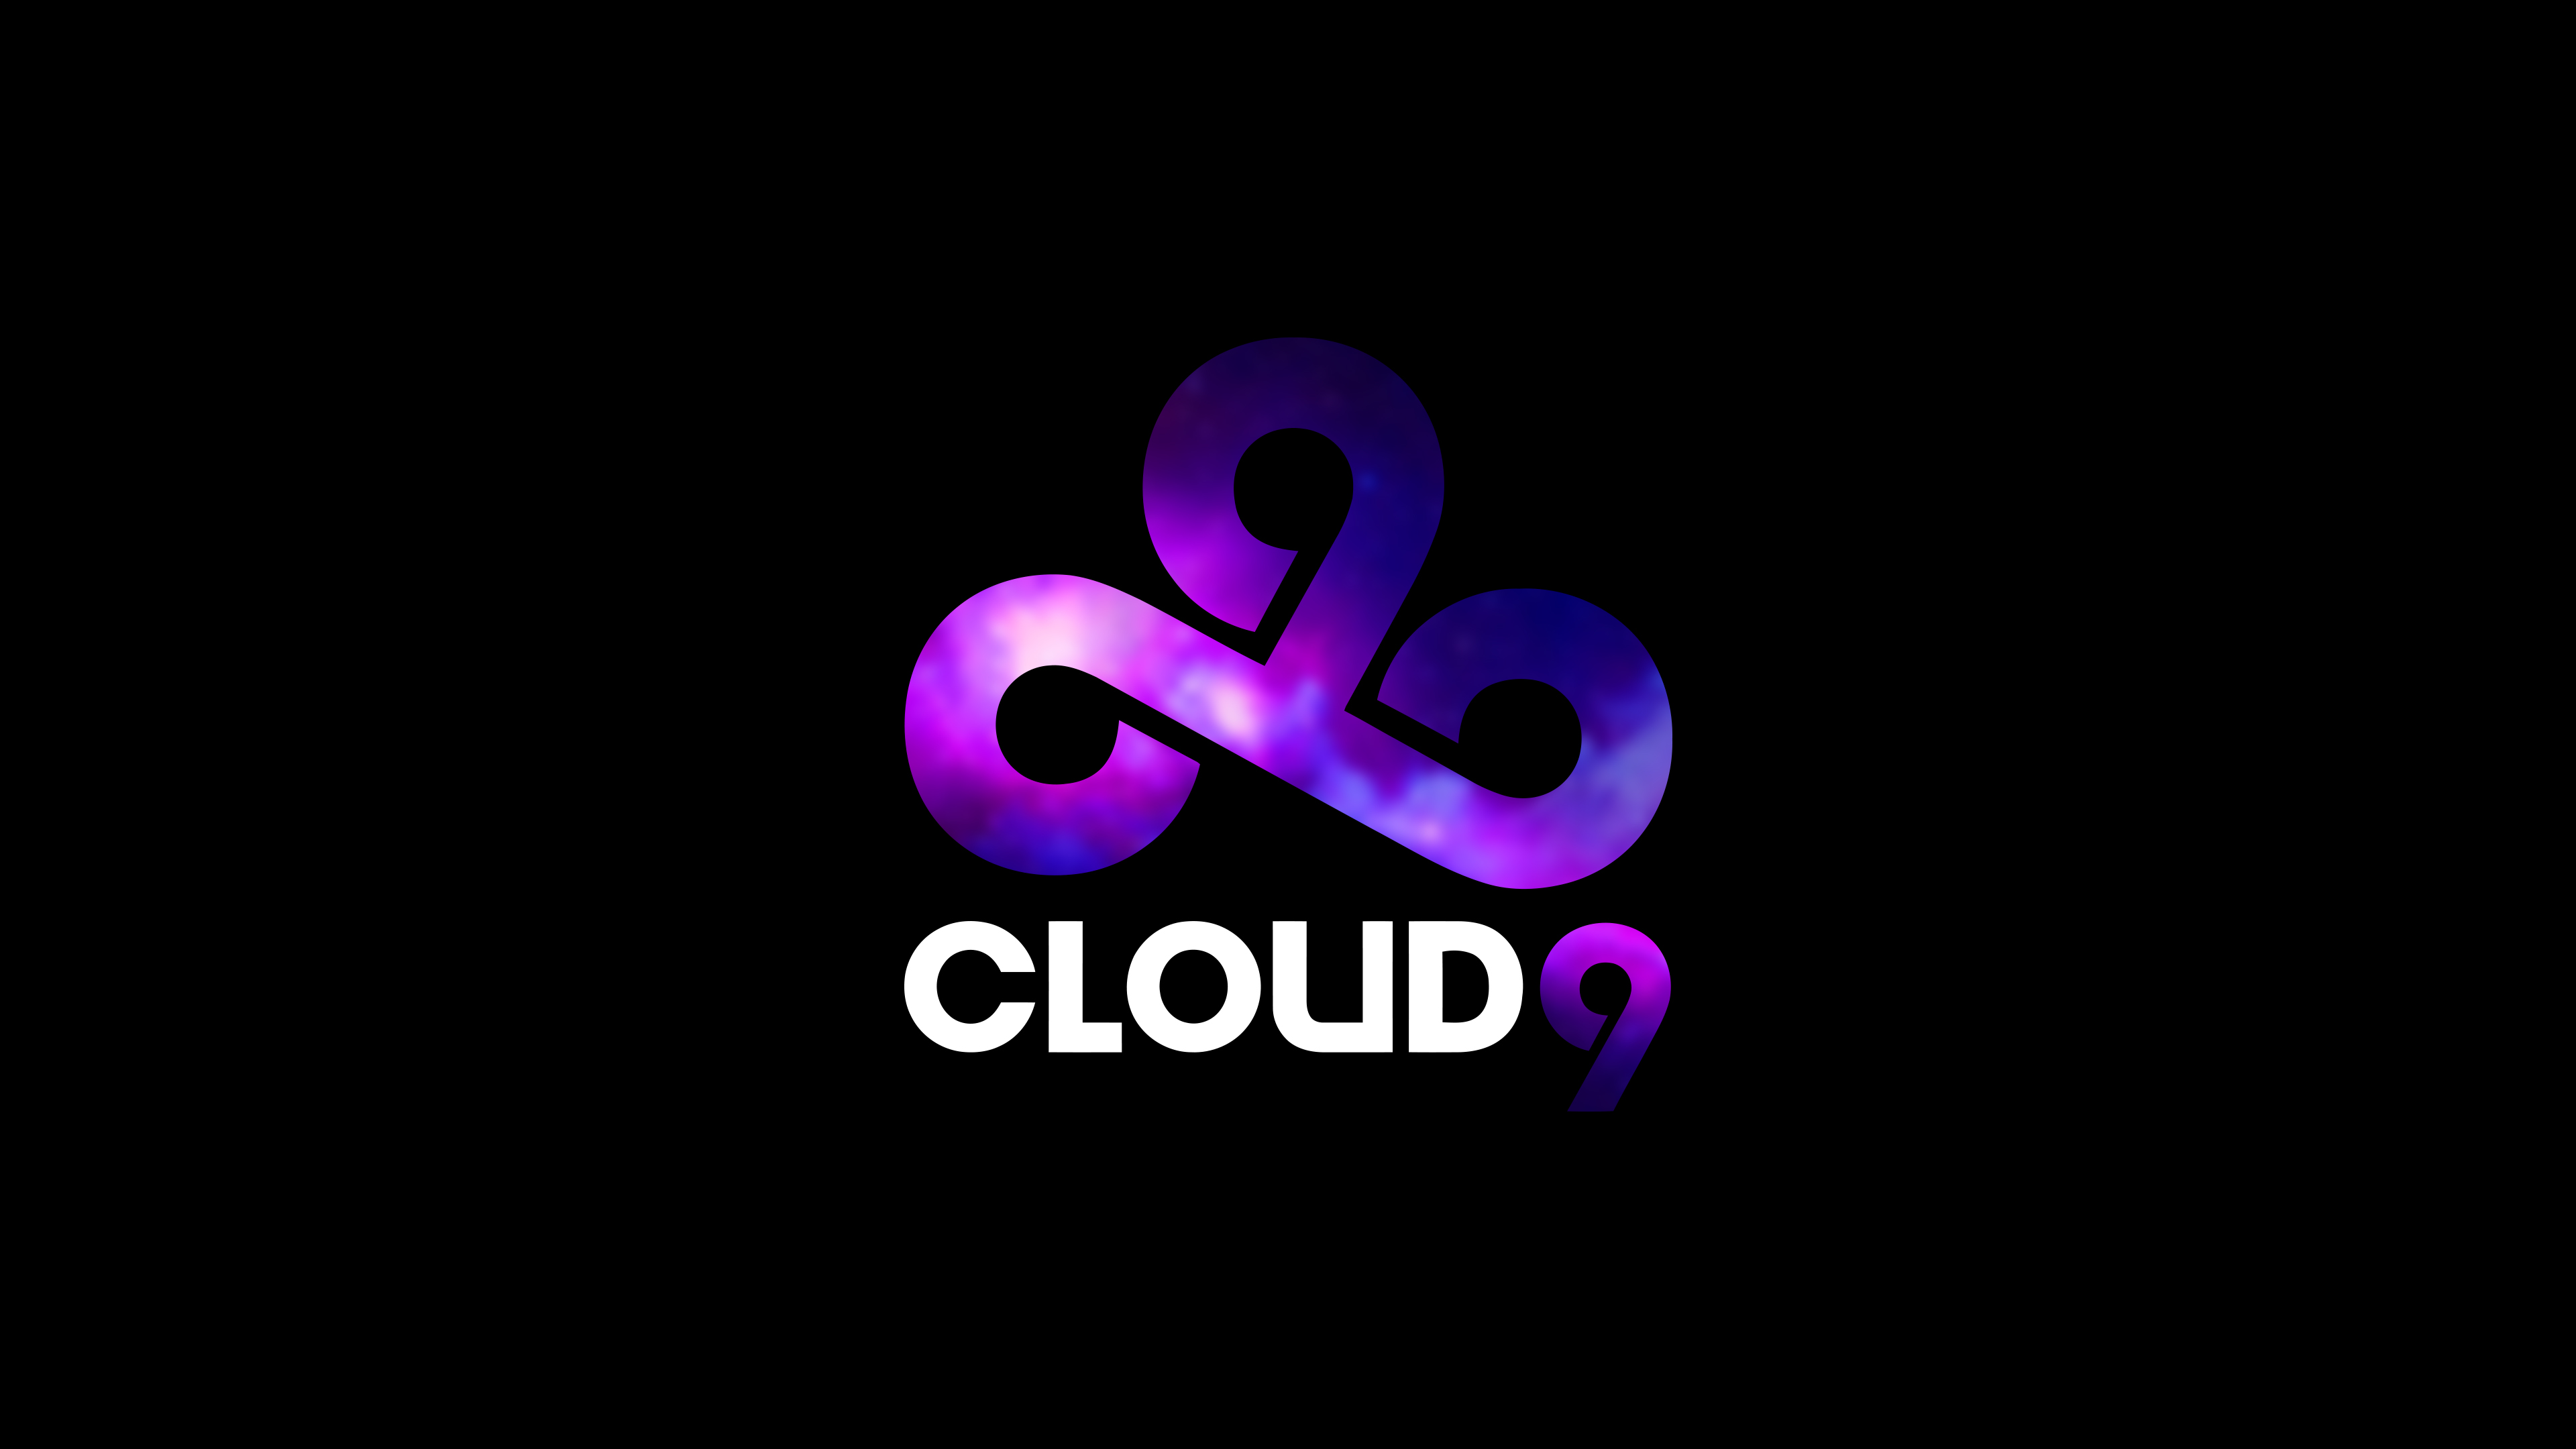 c9 wallpaper,text,logo,violet,purple,graphic design